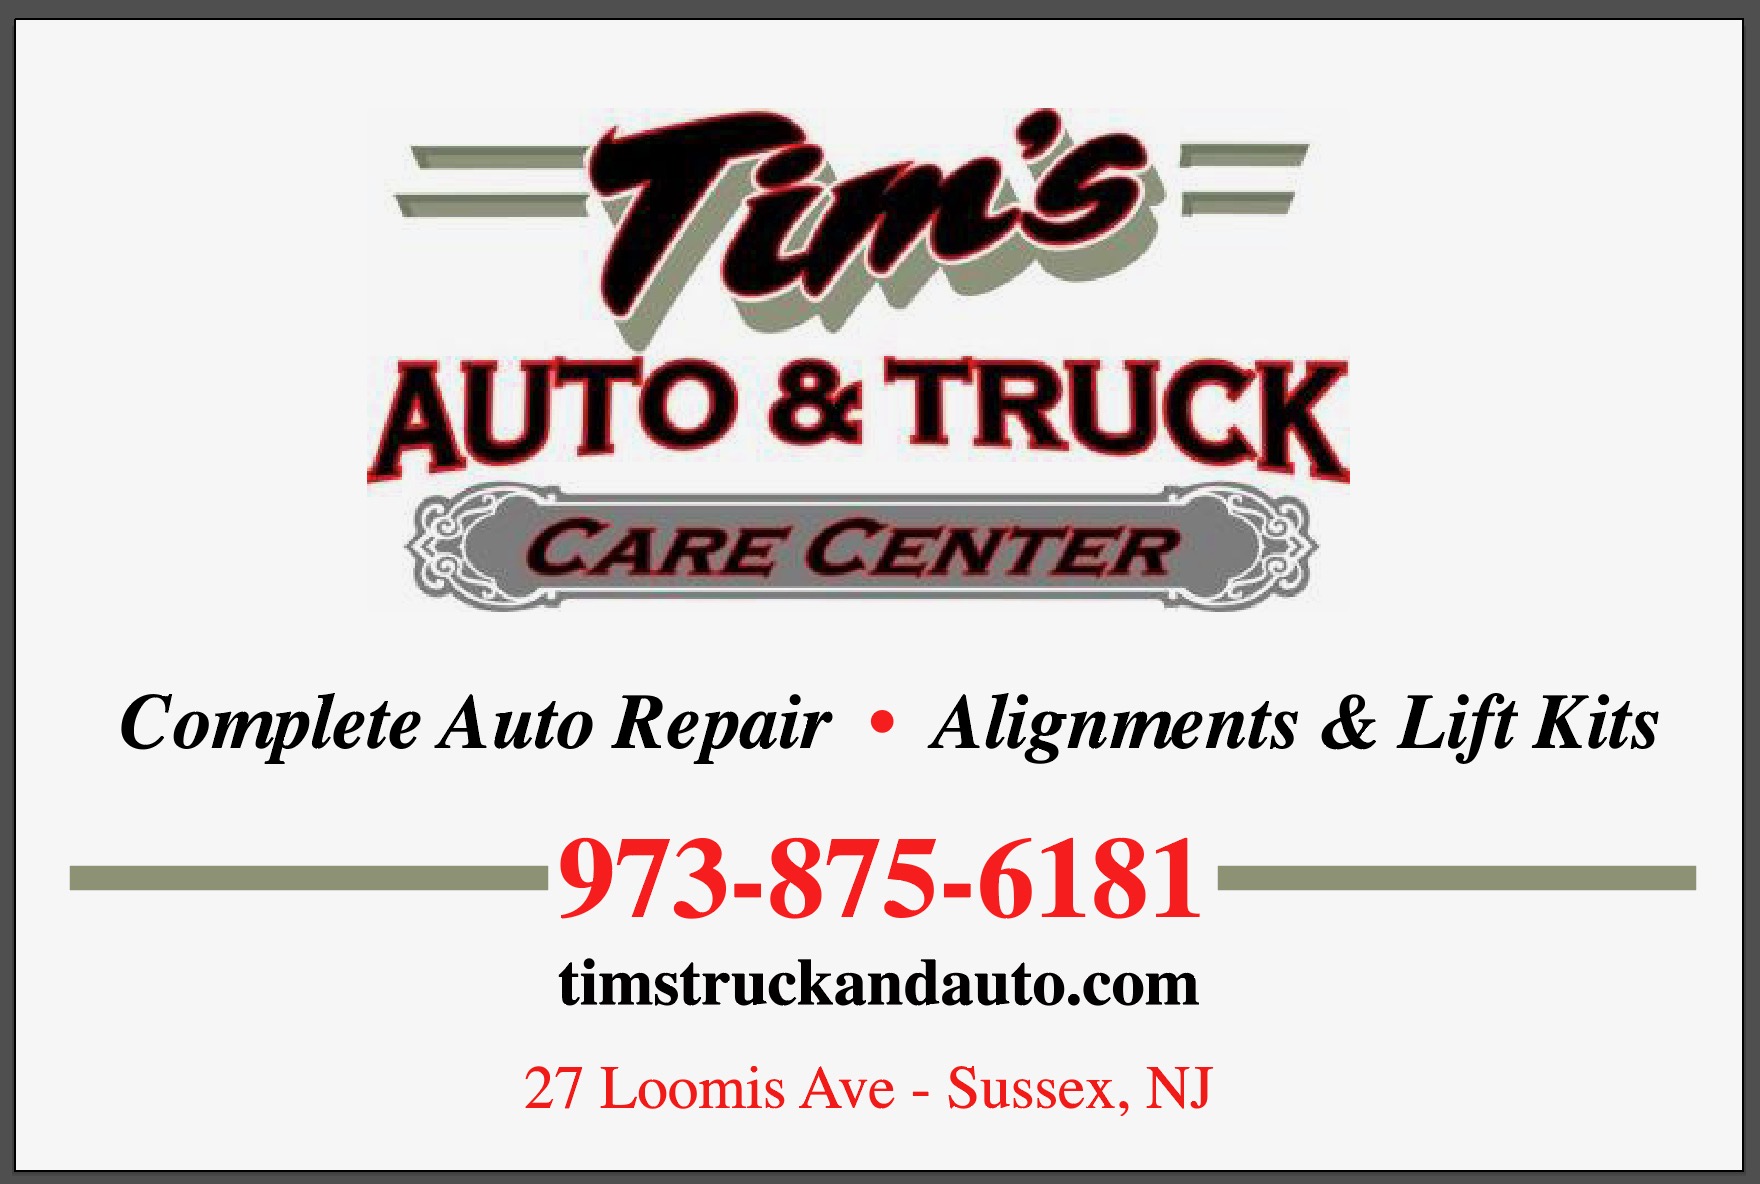 Tim's Auto Truck Care Center